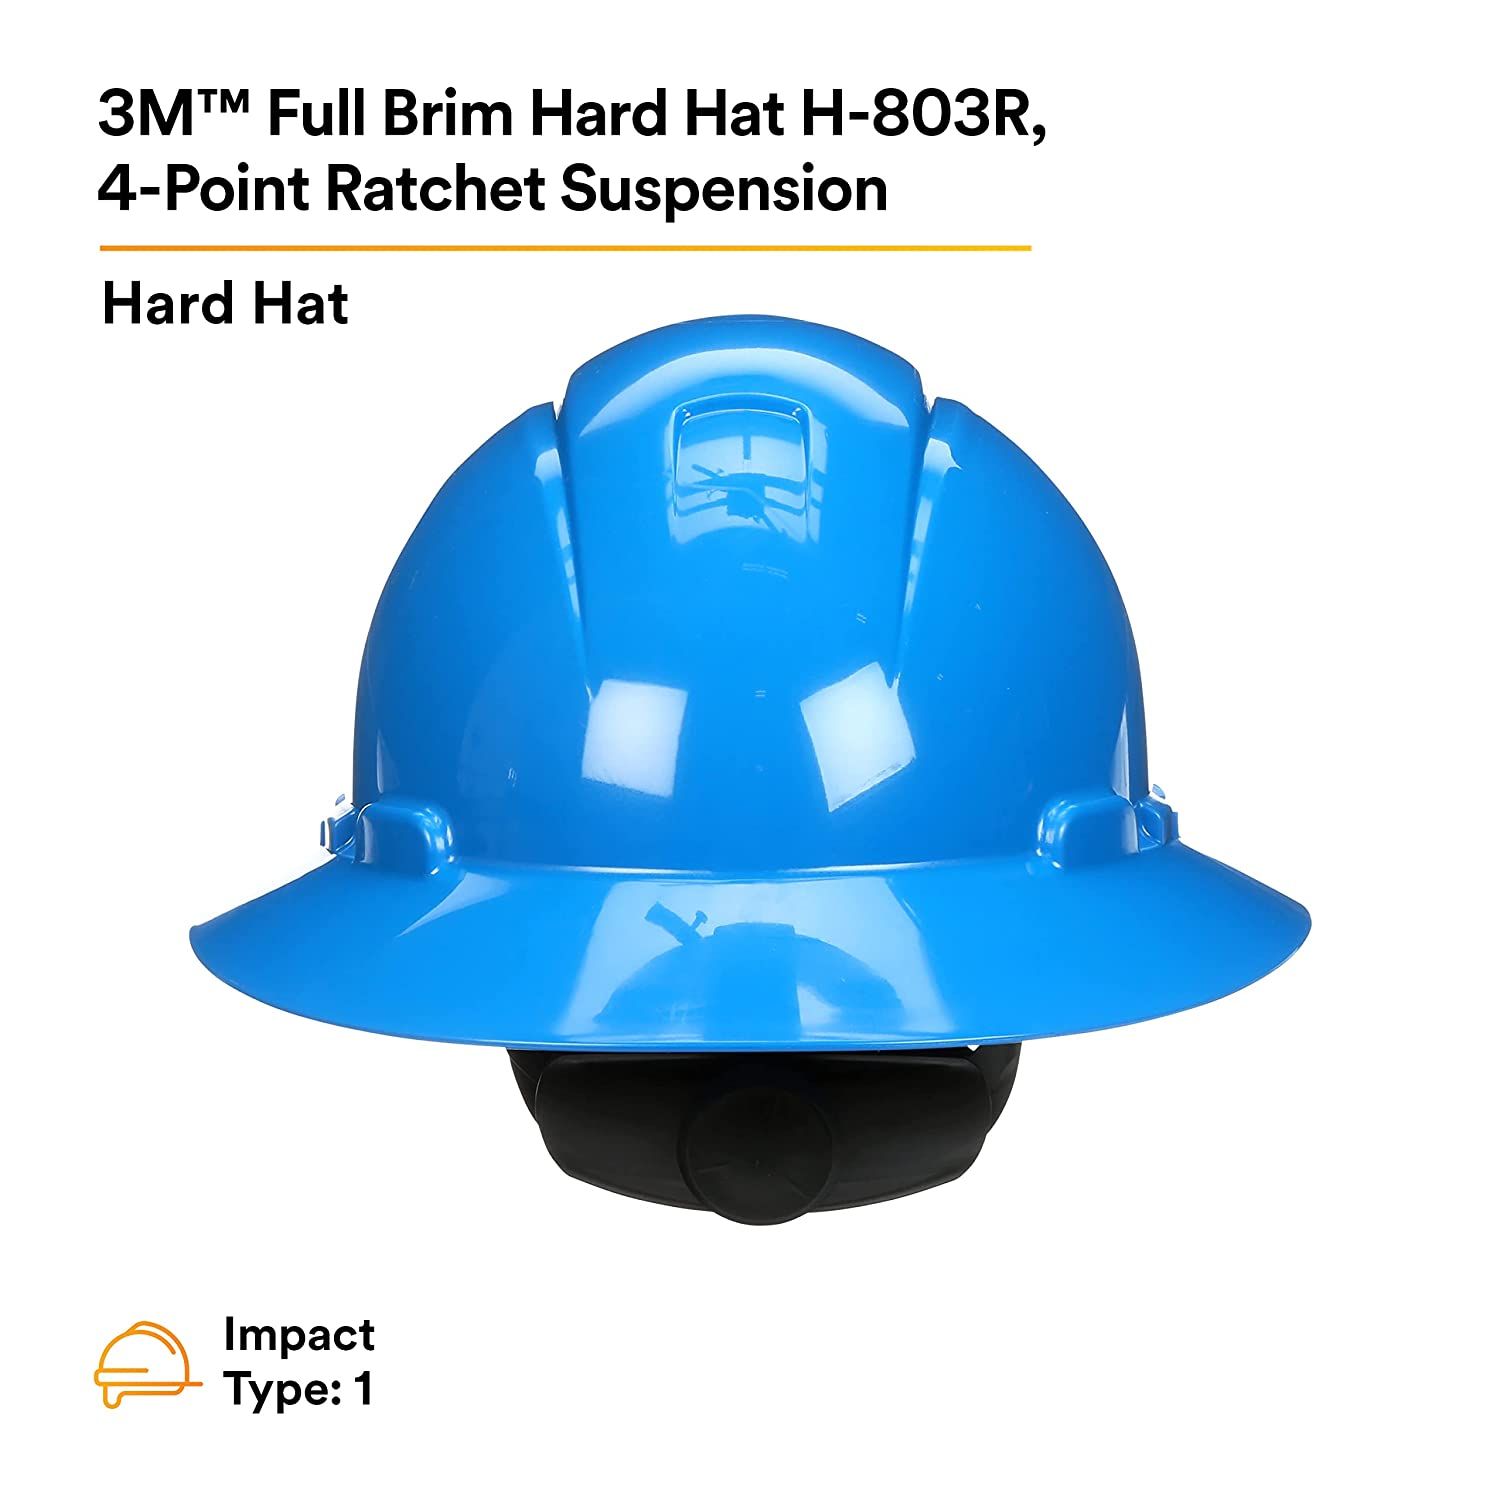 Hard Hat H-803R